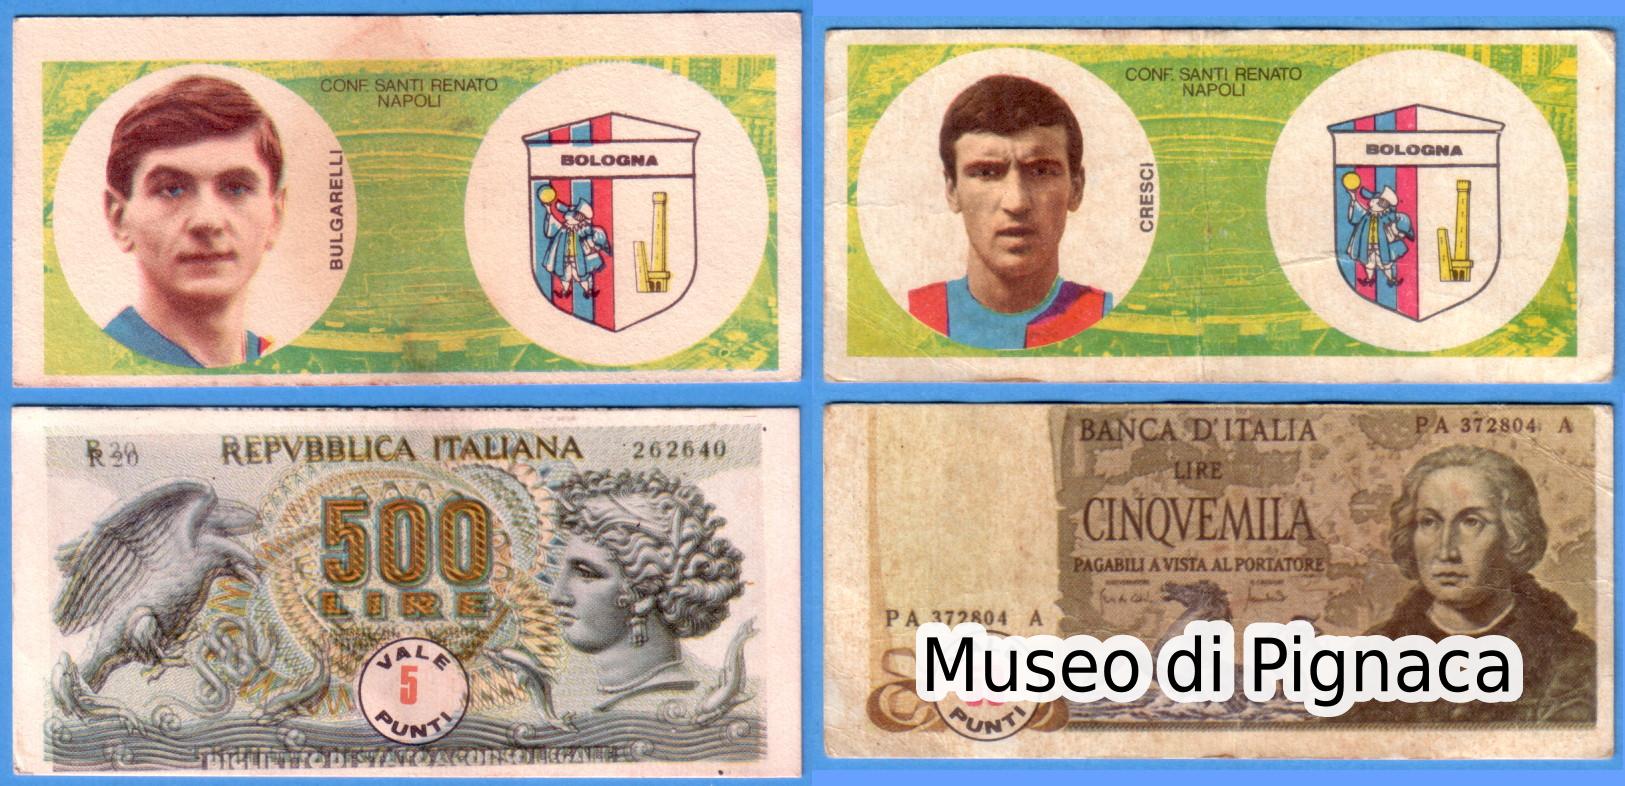 Renato Santi Confetture (Napoli) - 1974/75 figurine banconote Bulgarelli e Cresci (500 e 5000lire)